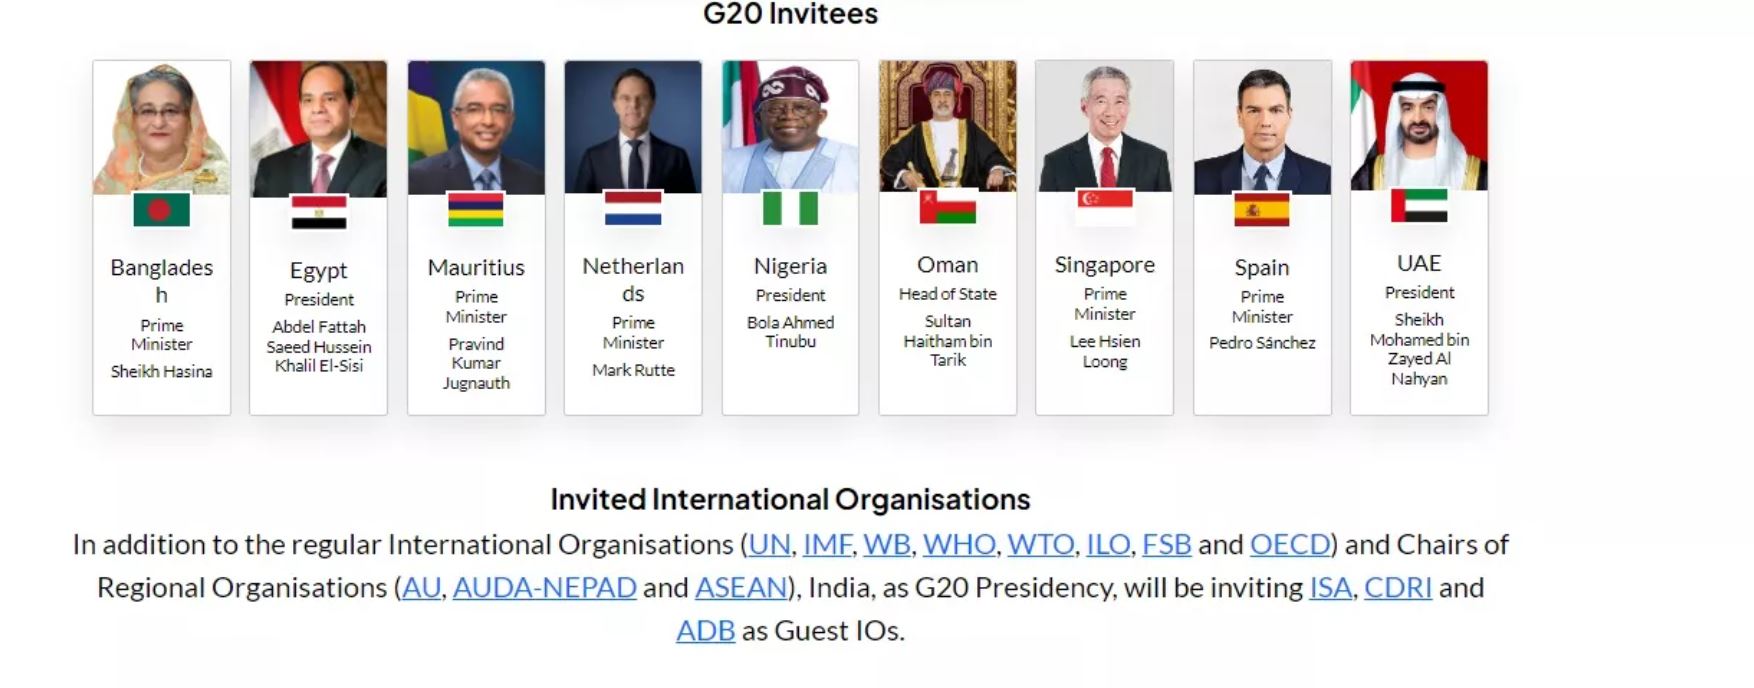 України немає у списку учасників саміту G20 в Індії, натомість запросили Путіна — фото